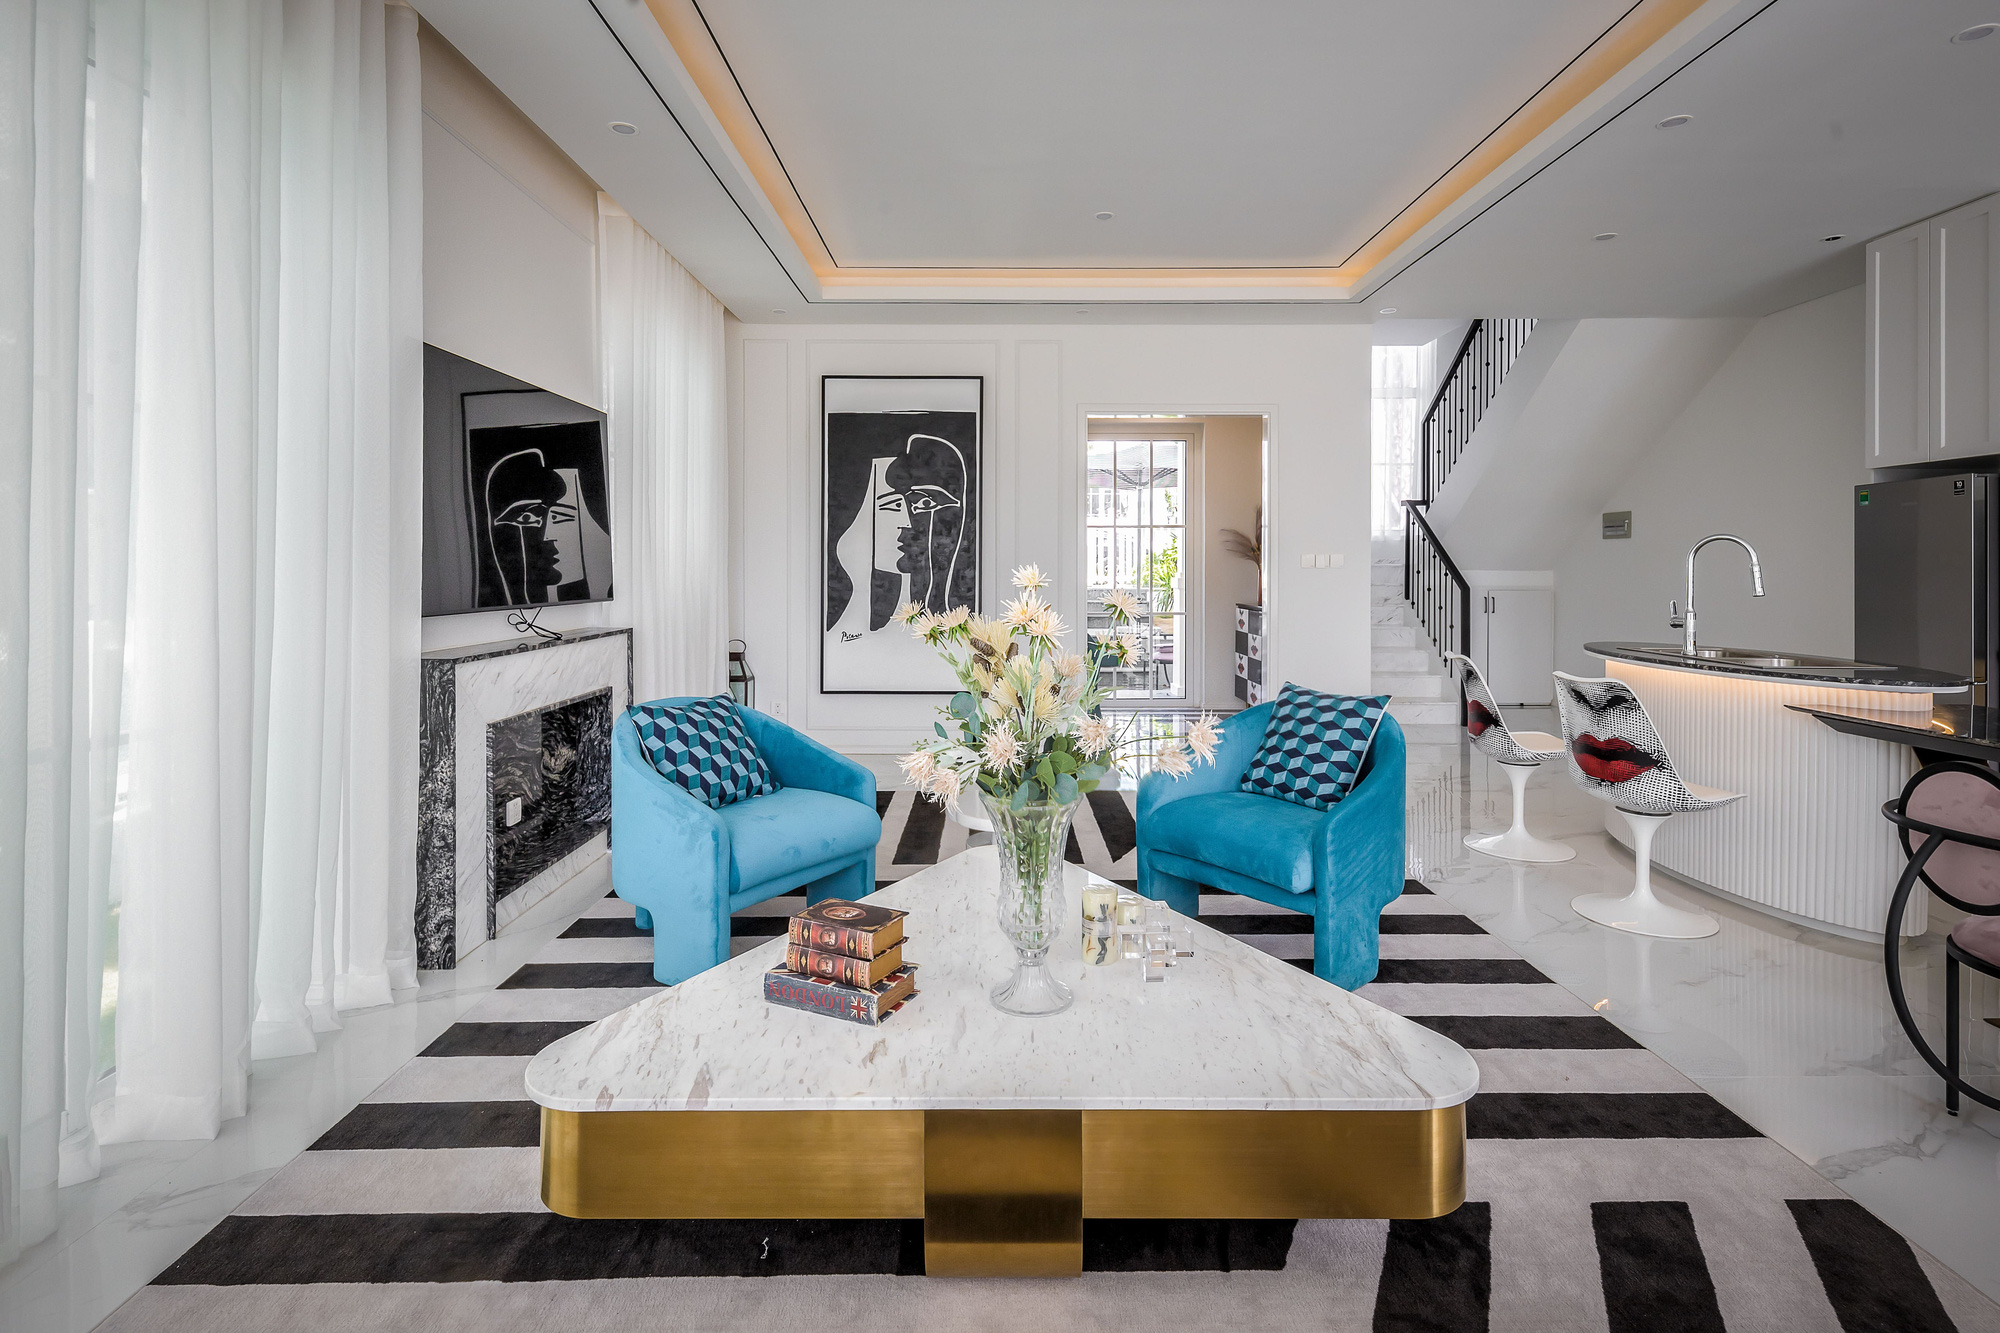 Căn villa 280m² trang bị nội thất giá 3 tỷ đẹp như bản giao hưởng nghệ thuật đương đại bên bờ biển Phan Thiết - Ảnh 6.